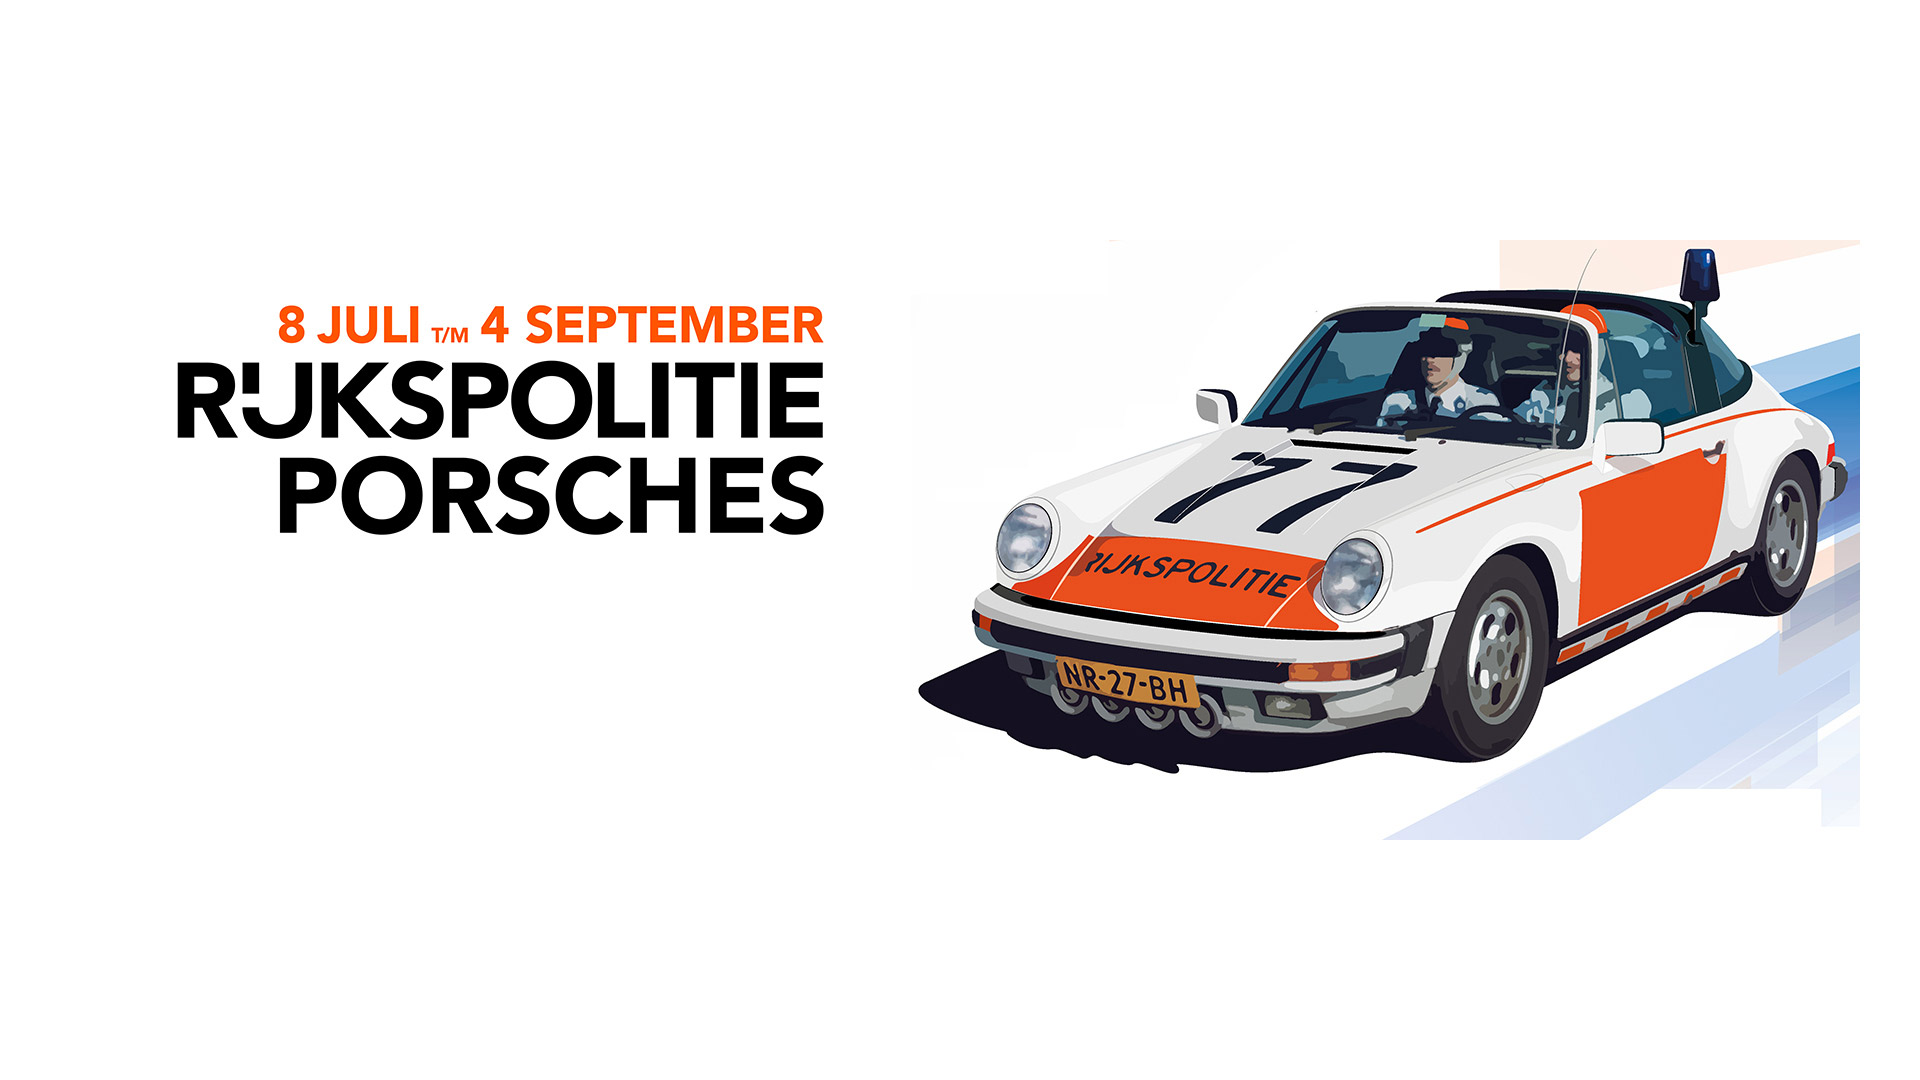 Rijkspolitie Porsches in het Louwman Museum van 8 juli tot 4 september